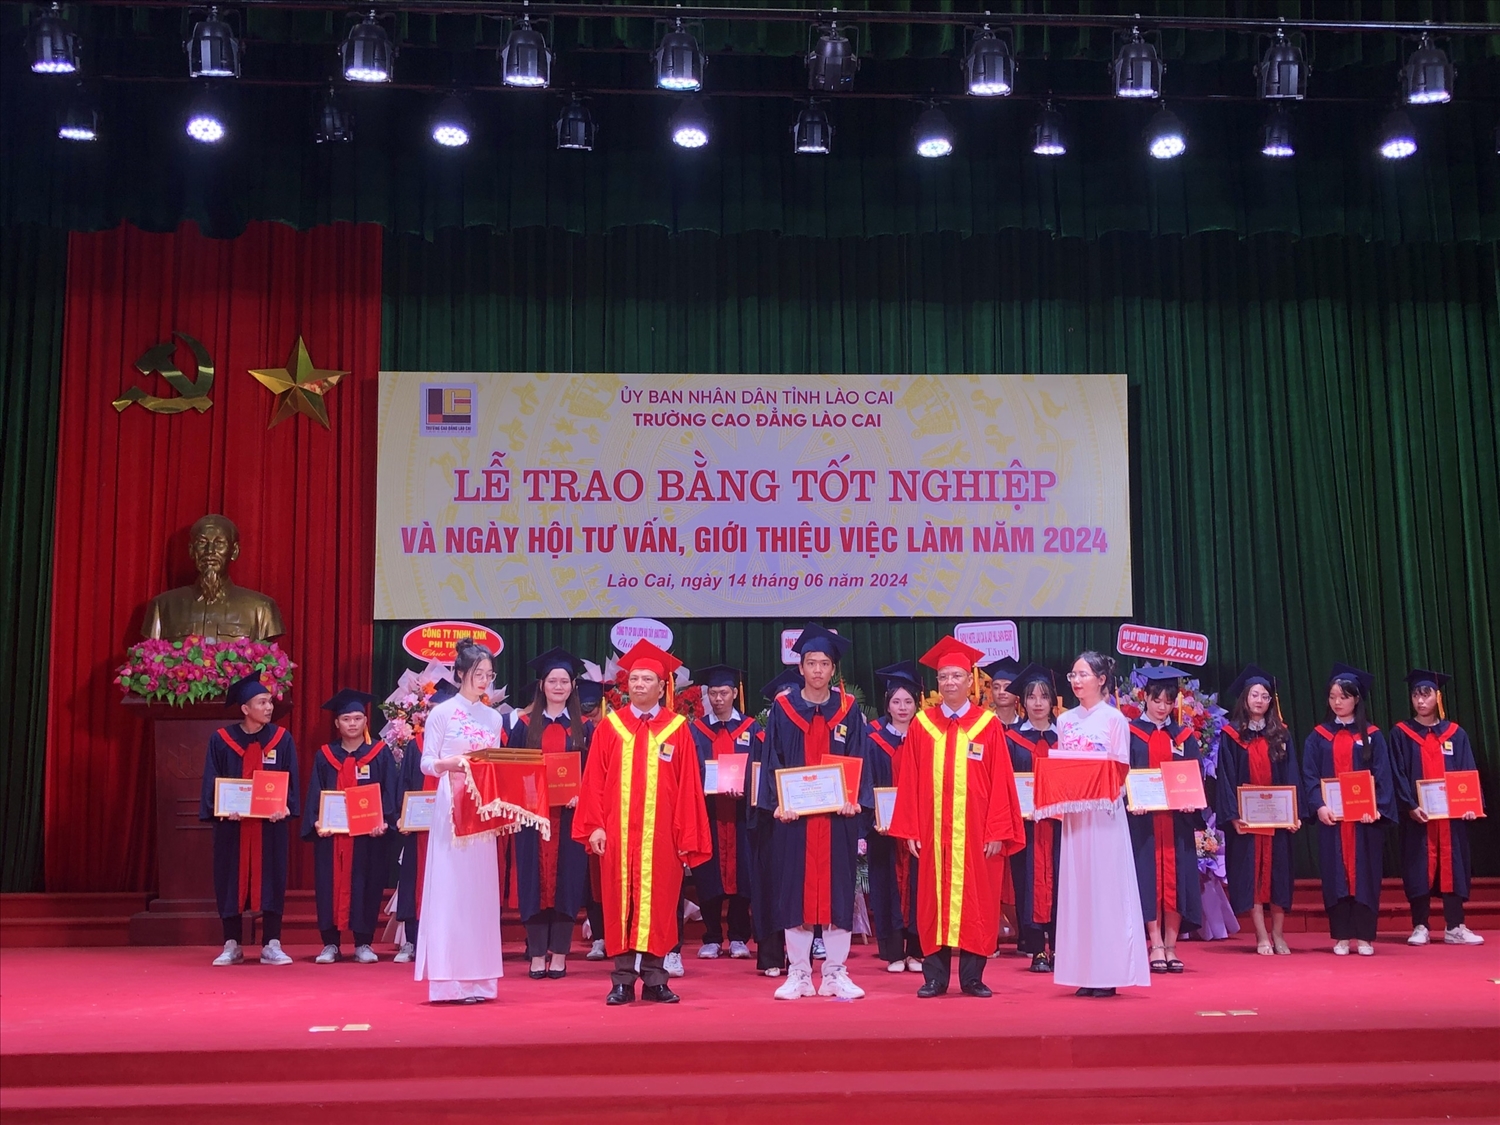 Trường Cao đẳng Lào Cai đã và đang nâng cao chất lượng đào tạo, đáp ứng nguồn nhân lực chất lượng cao cho khu vực Tây Bắc cũng như cả nước